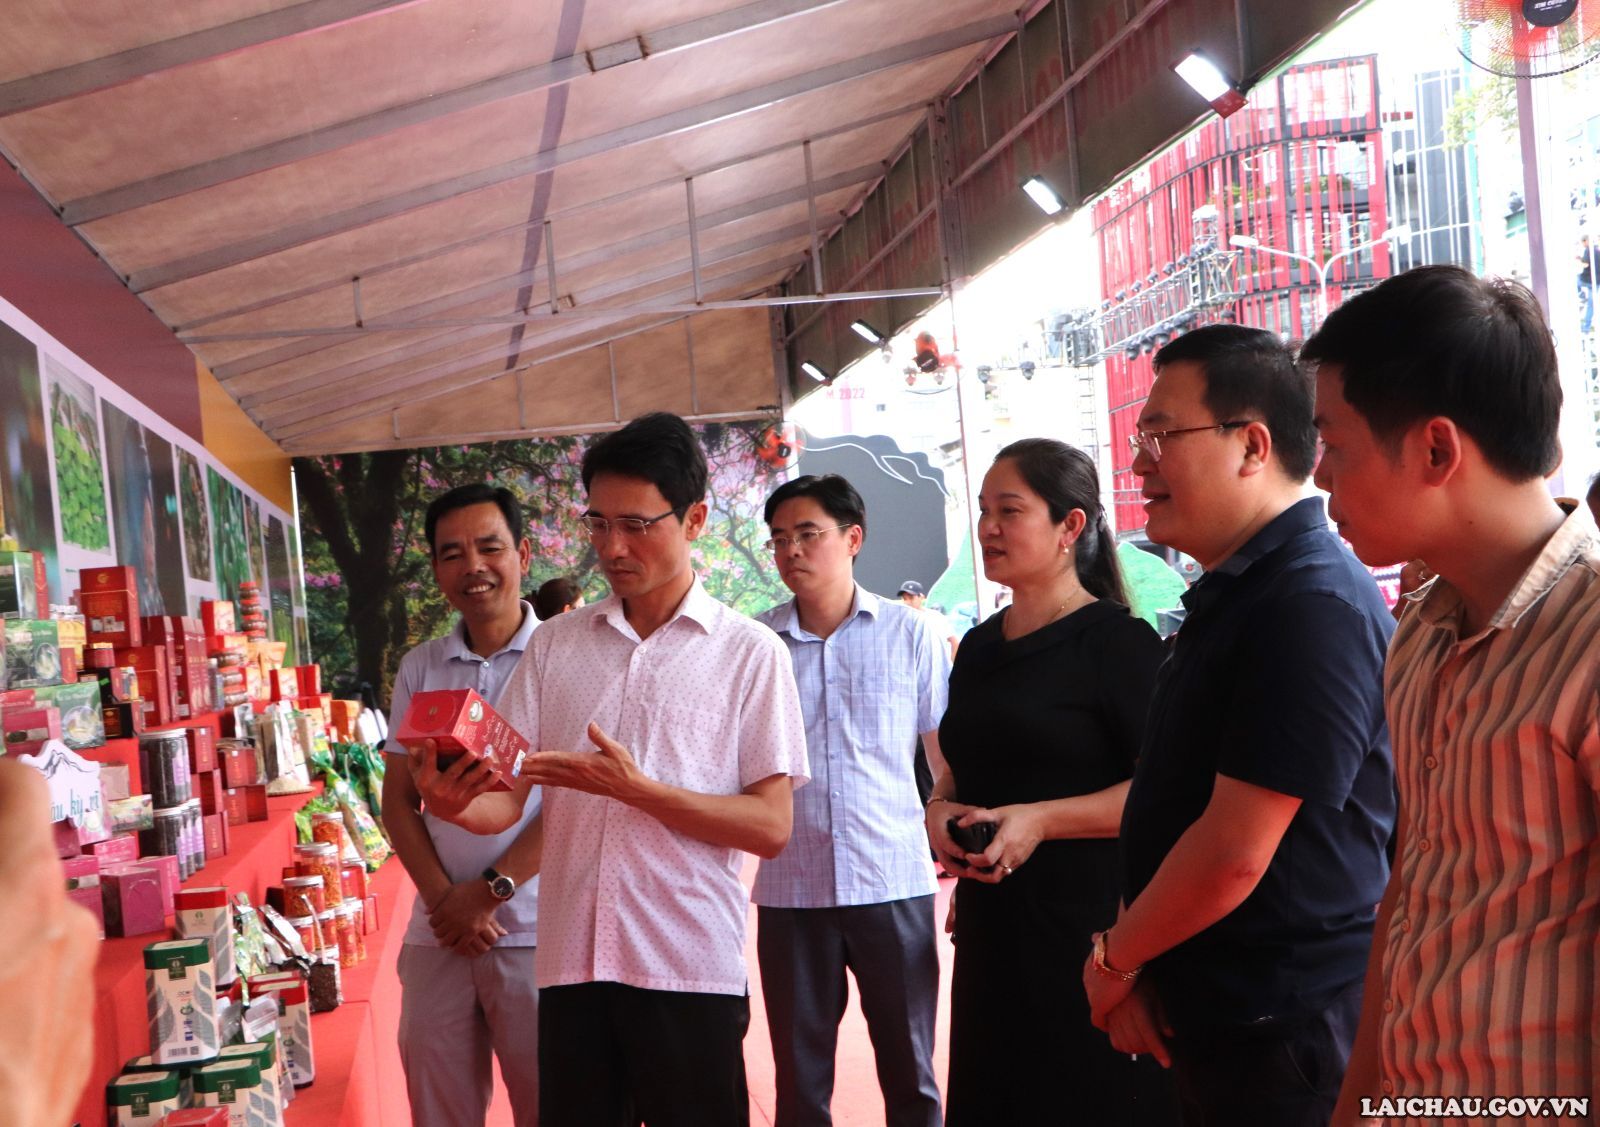 Đồng chí Hà Trọng Hải - Phó Chủ tịch UBND tỉnh thăm không gian văn hóa và gian trưng bày các sản phẩm OCOP tại Tuần Văn hóa - Du lịch Lai Châu tại thành phố Hồ Chí Minh năm 2022